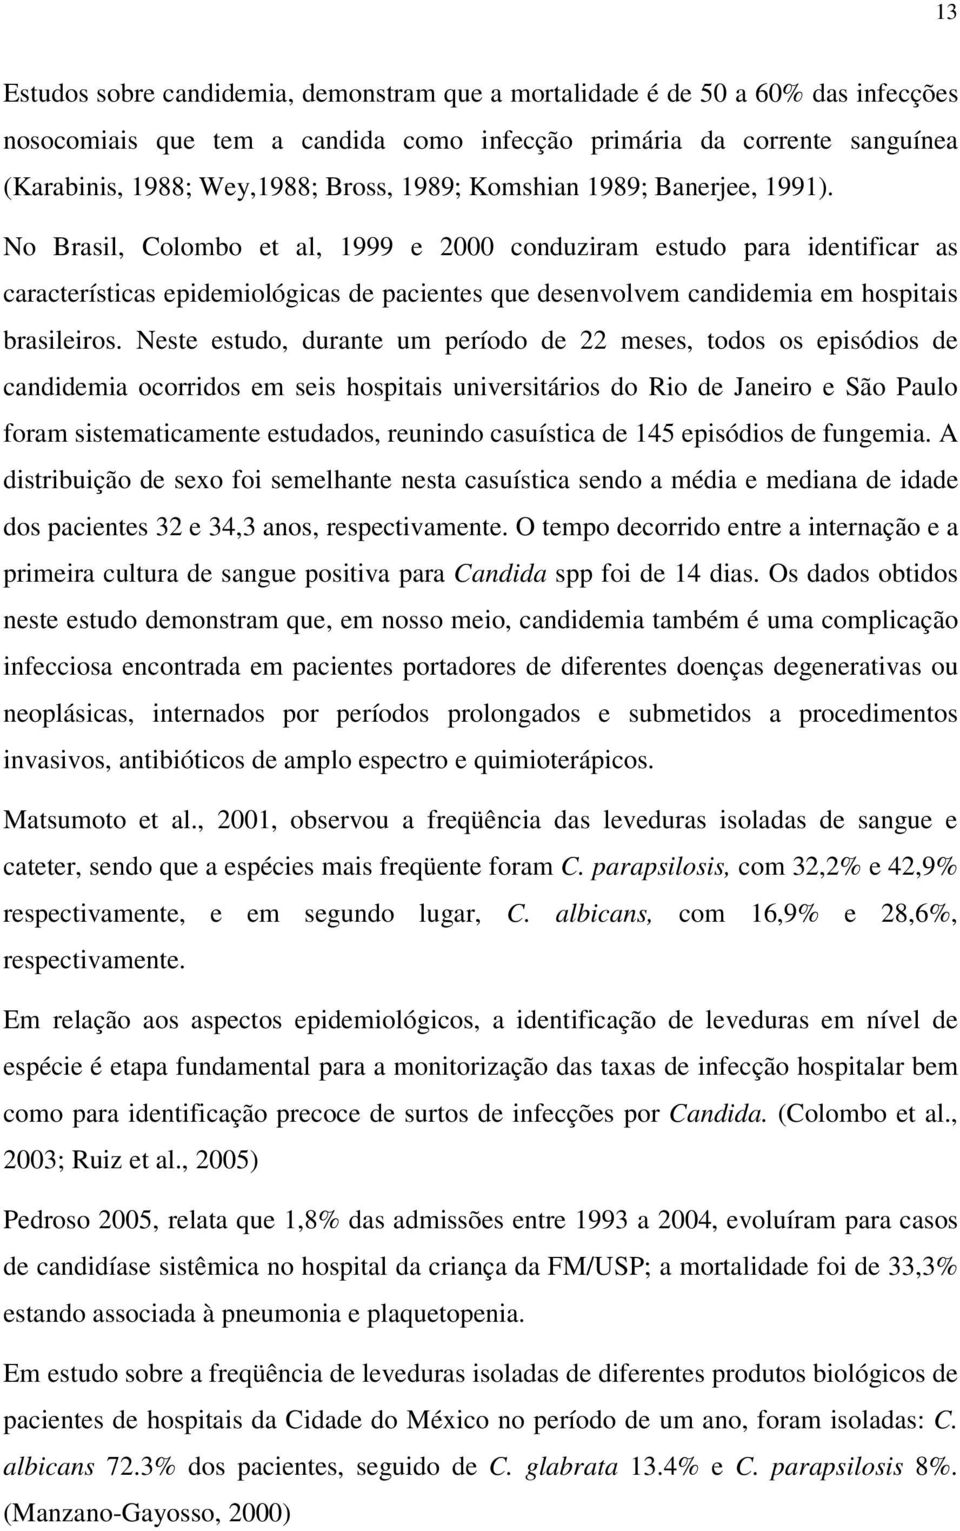 No Brasil, Colombo et al, 1999 e 2000 conduziram estudo para identificar as características epidemiológicas de pacientes que desenvolvem candidemia em hospitais brasileiros.